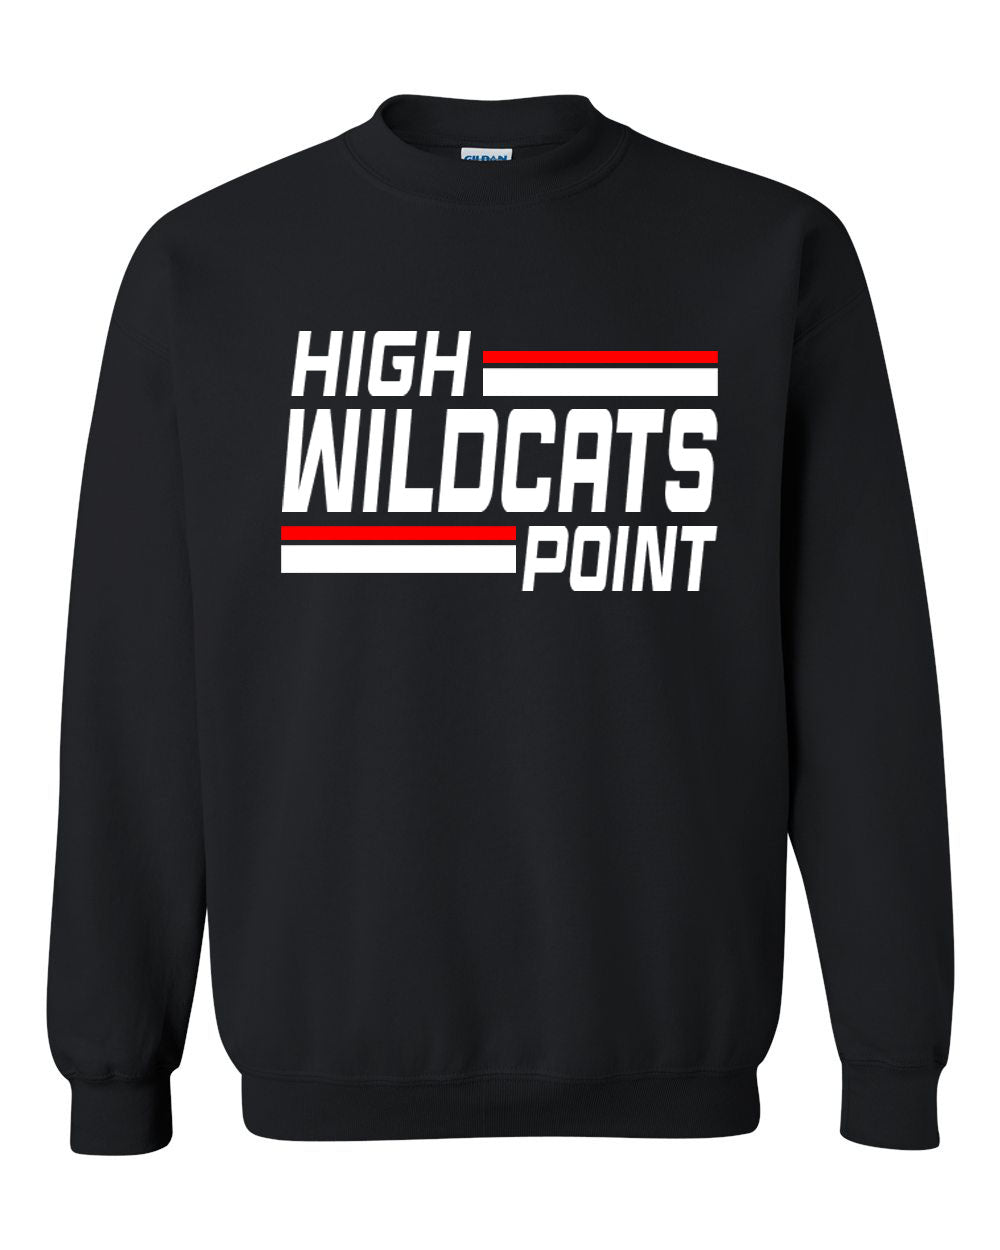 Wildcats Cheer Design 4 non hooded sweatshirt